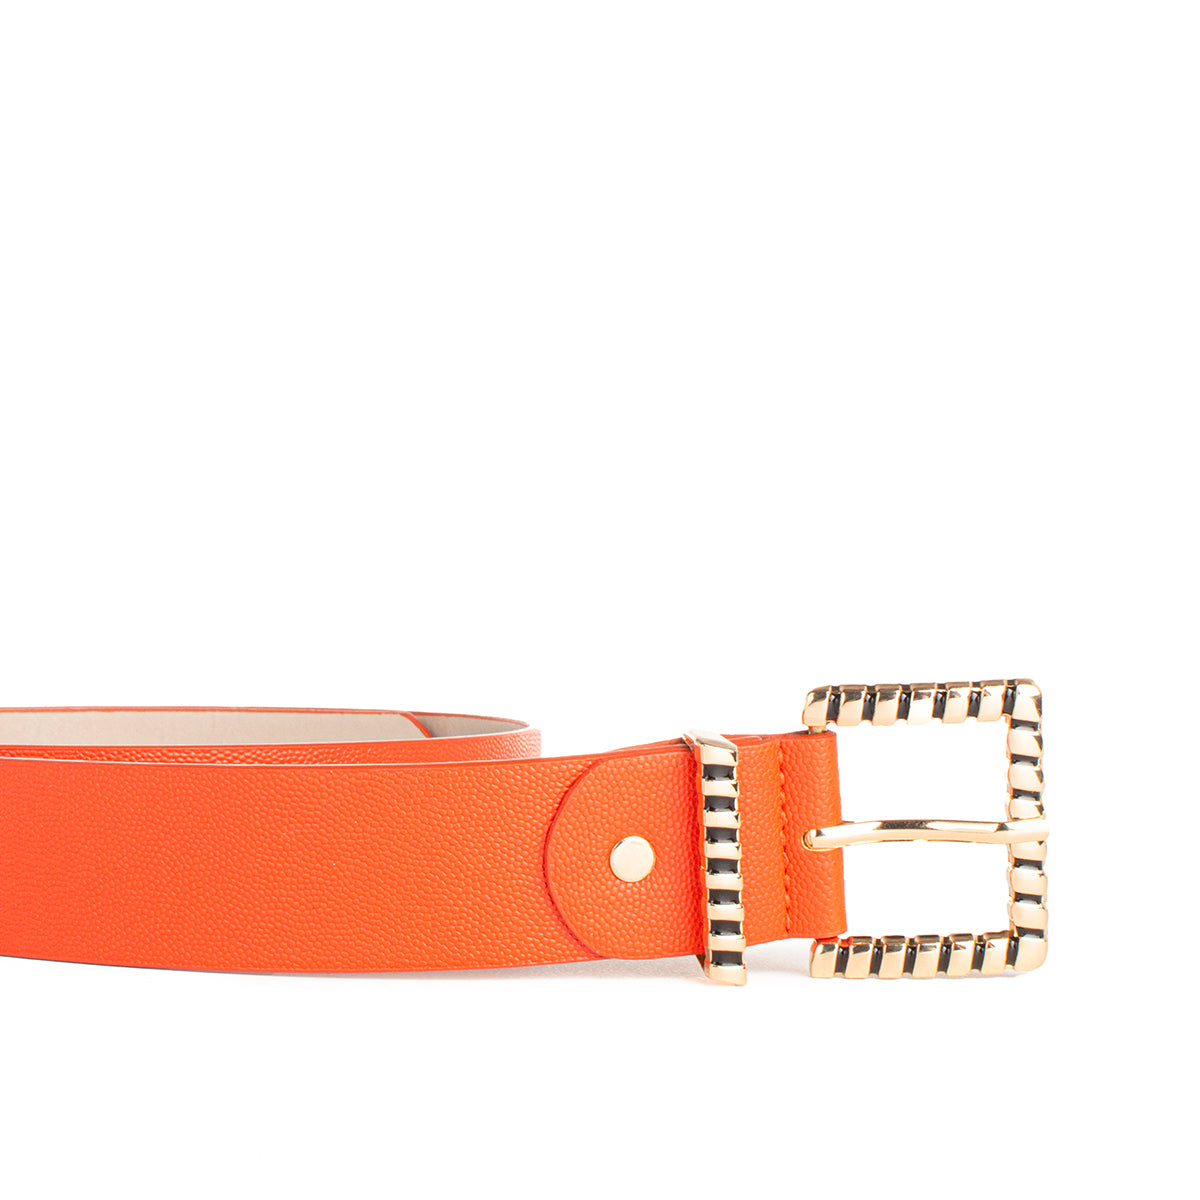 Cinturón sintético color naranja, para dama